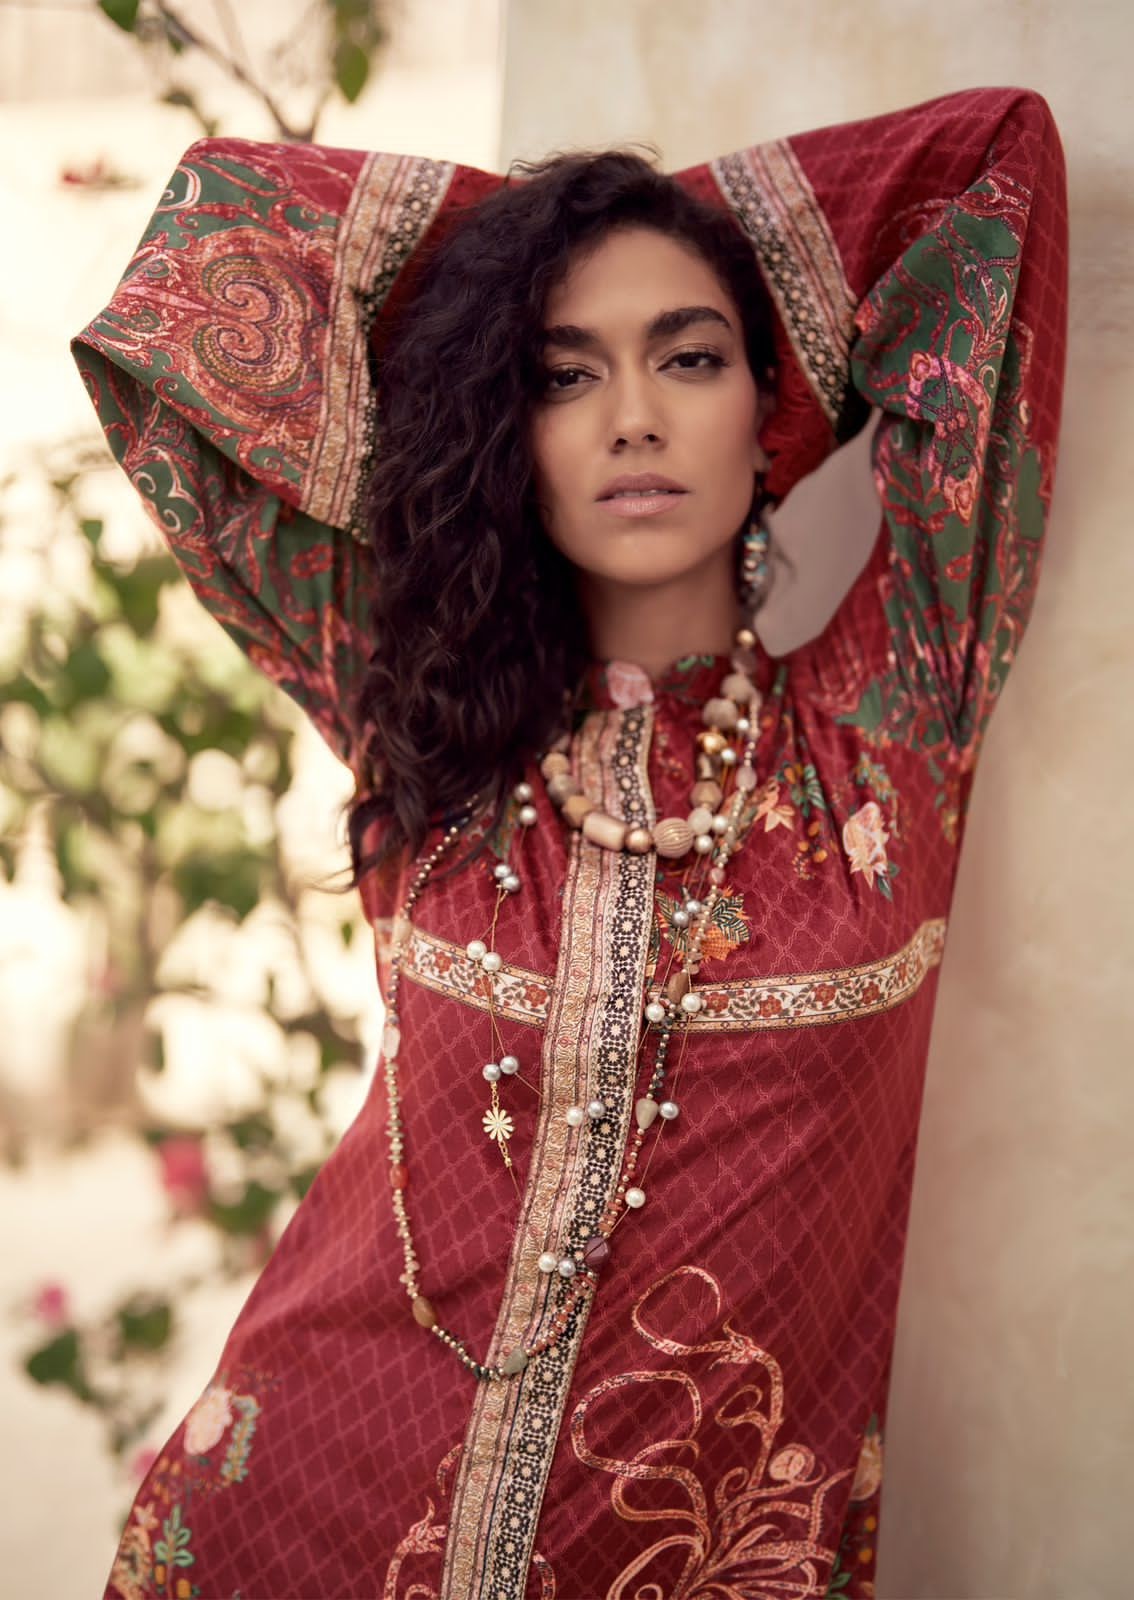 Izhar Mumtaz Arts Velvet Suits